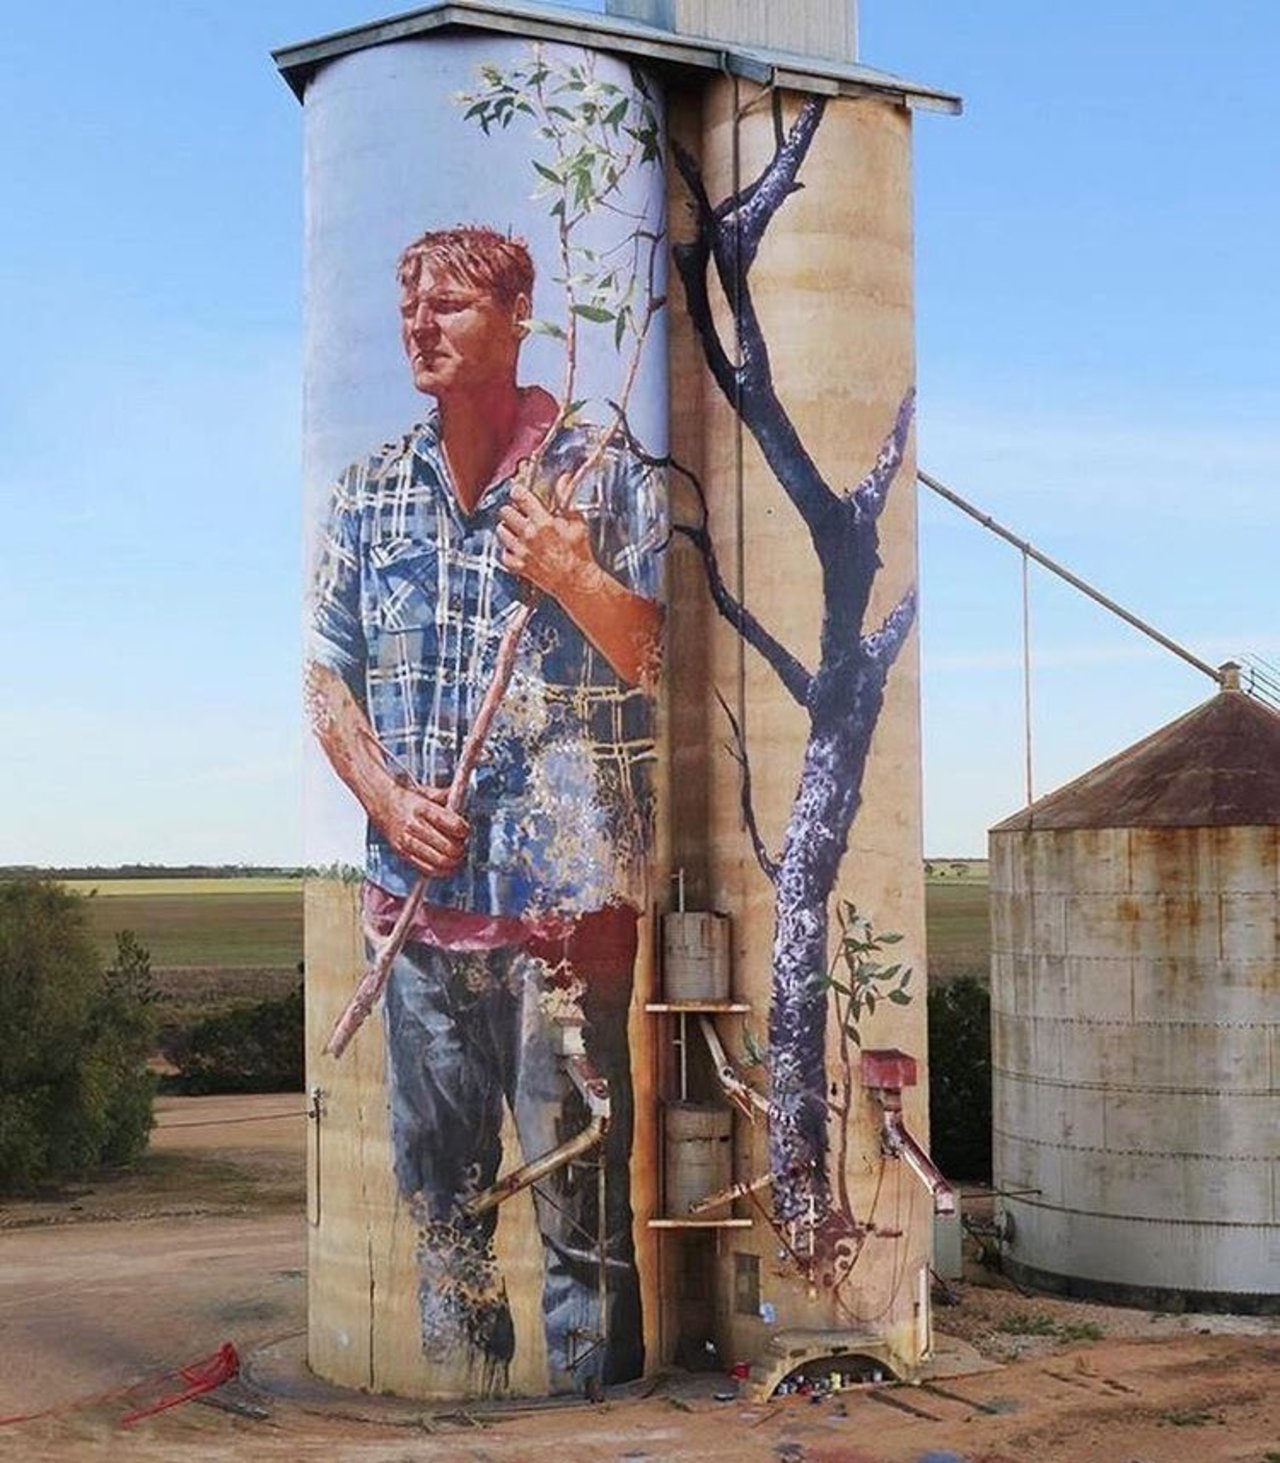 #mural by Fintan Magee #Patchewollock #Australia #art #graffiti #streetart #urbanart https://t.co/8KzKGuet0L